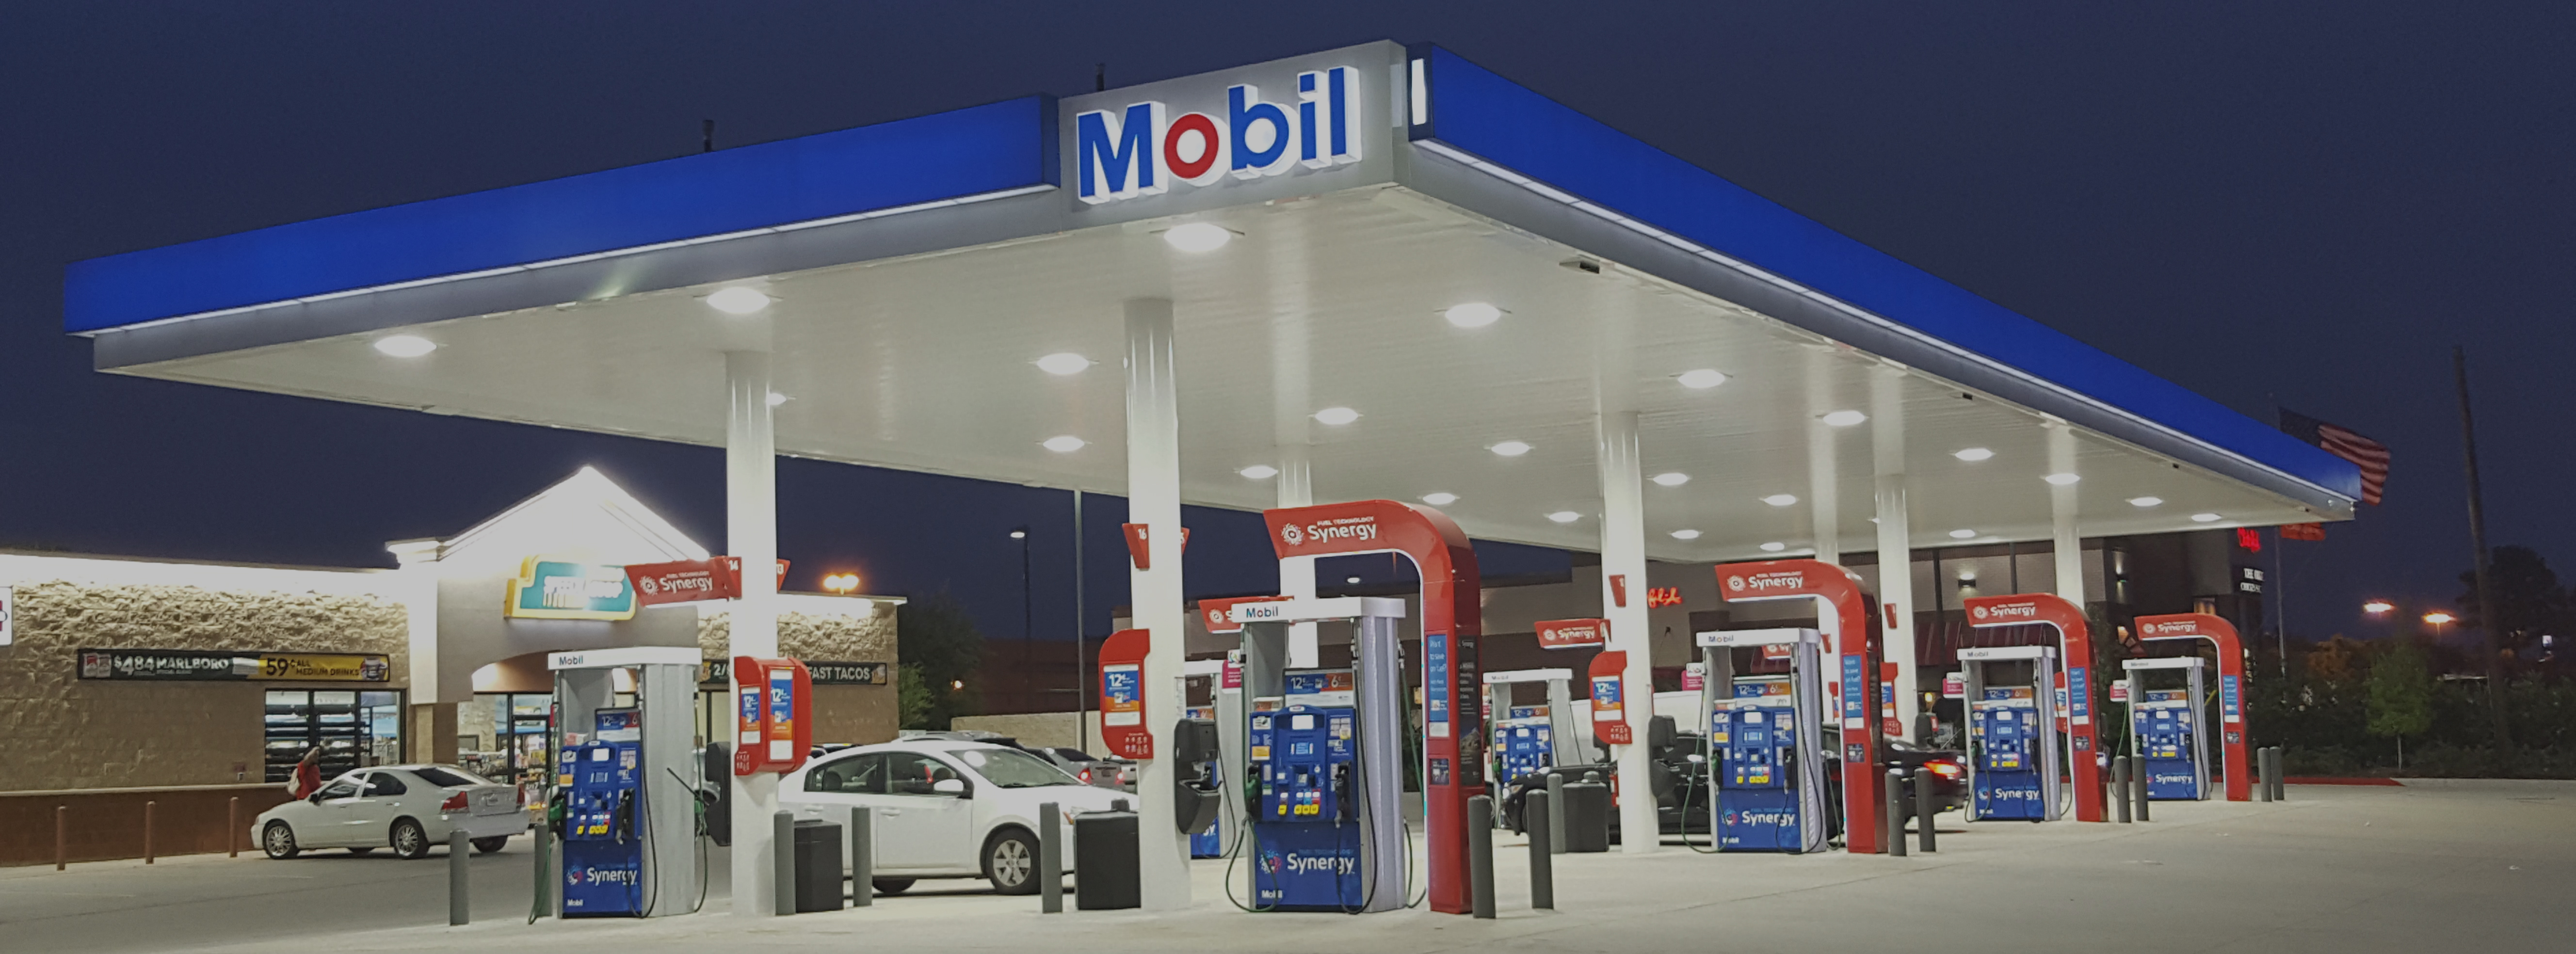 mobil synergy gas availability